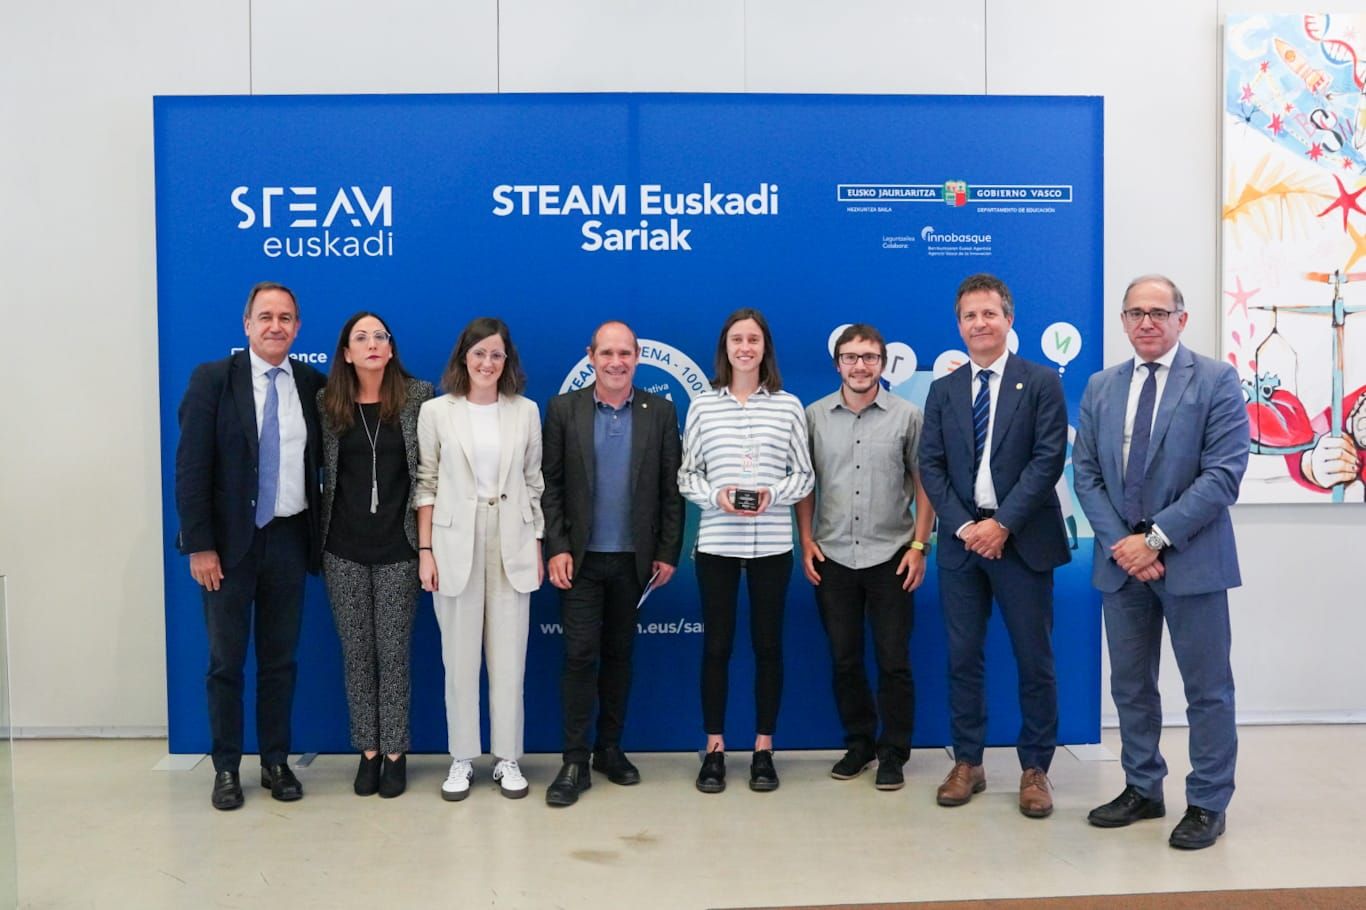 Vicomtech, Mondragon Unibertsitatea e Ikaslan Gipuzkoa reciben el segundo premio en los premios STEAM Euskadi con su proyecto en común: STEMotiv